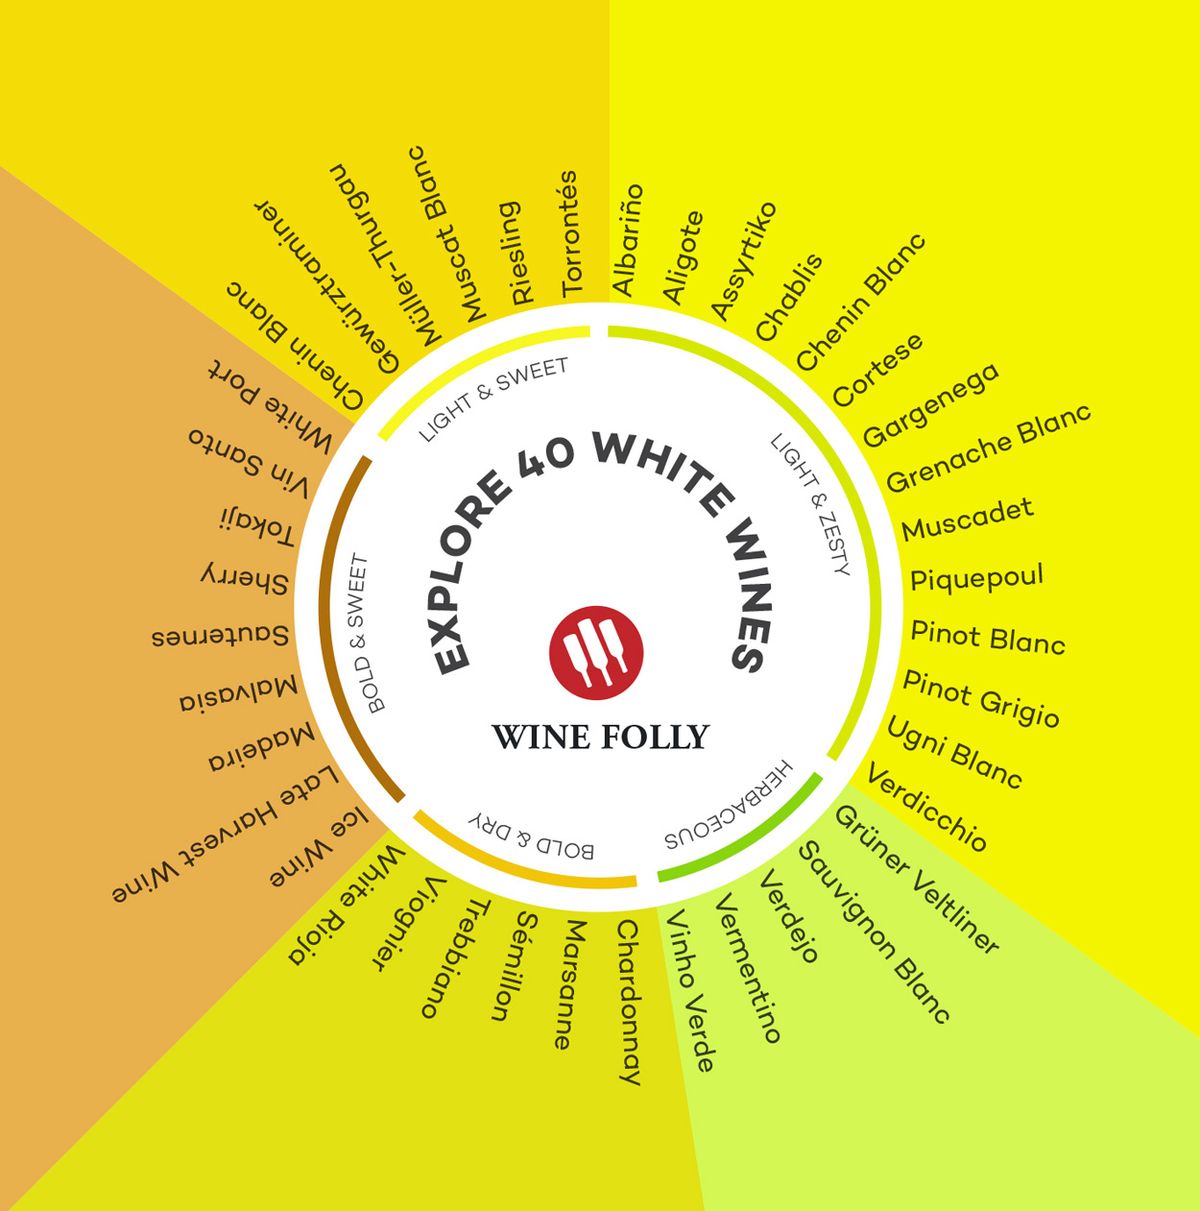 Baltųjų vynų sąrašas pradedantiesiems